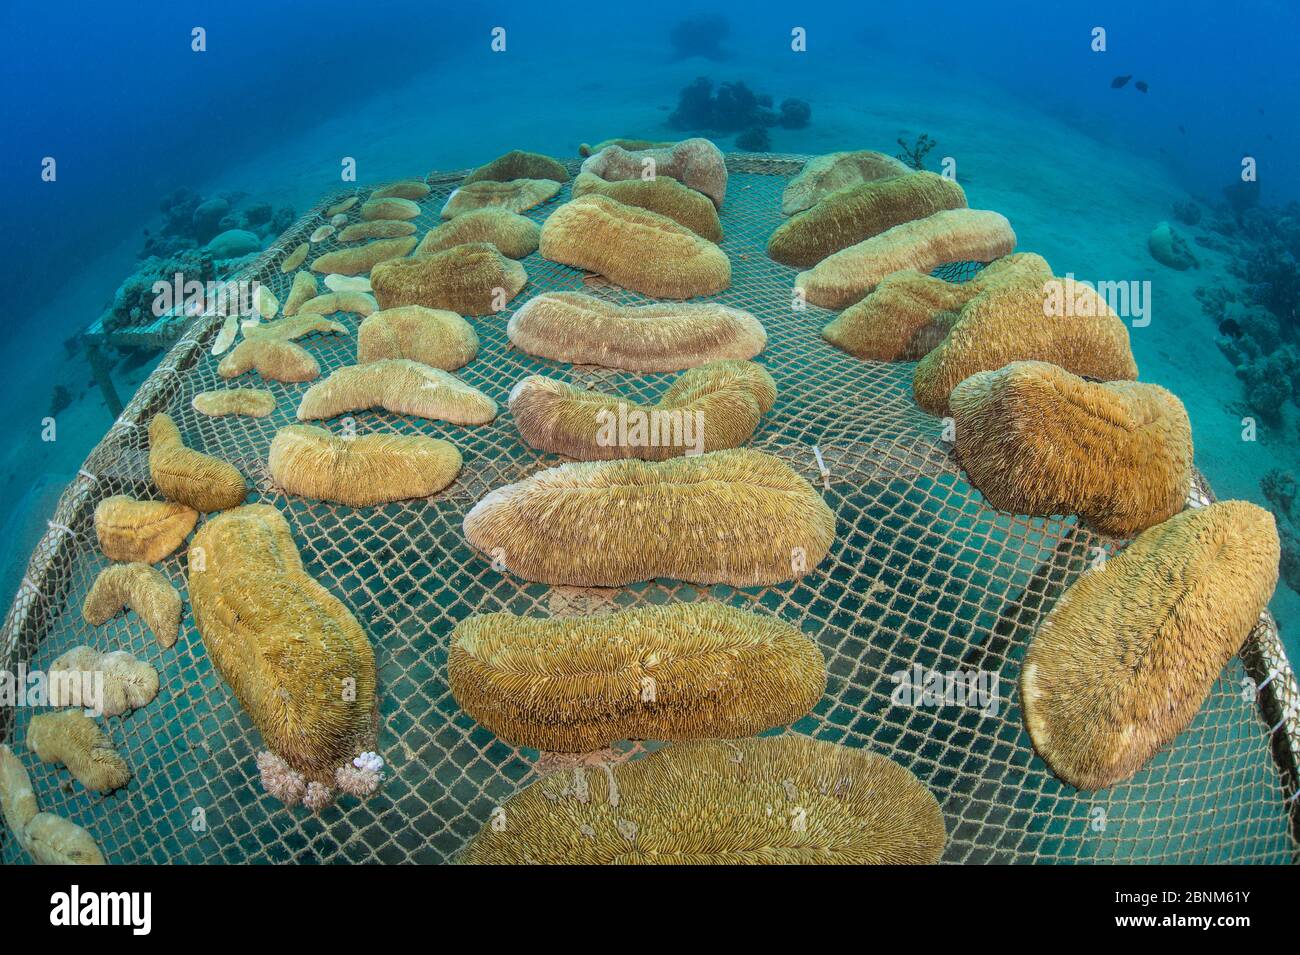 Ampio angolo di vista della tabella di propagazione corallo con coralli a fungo (Herpolitha limax) Aqaba, Giordania. Golfo di Aqaba, Mar Rosso. Foto Stock